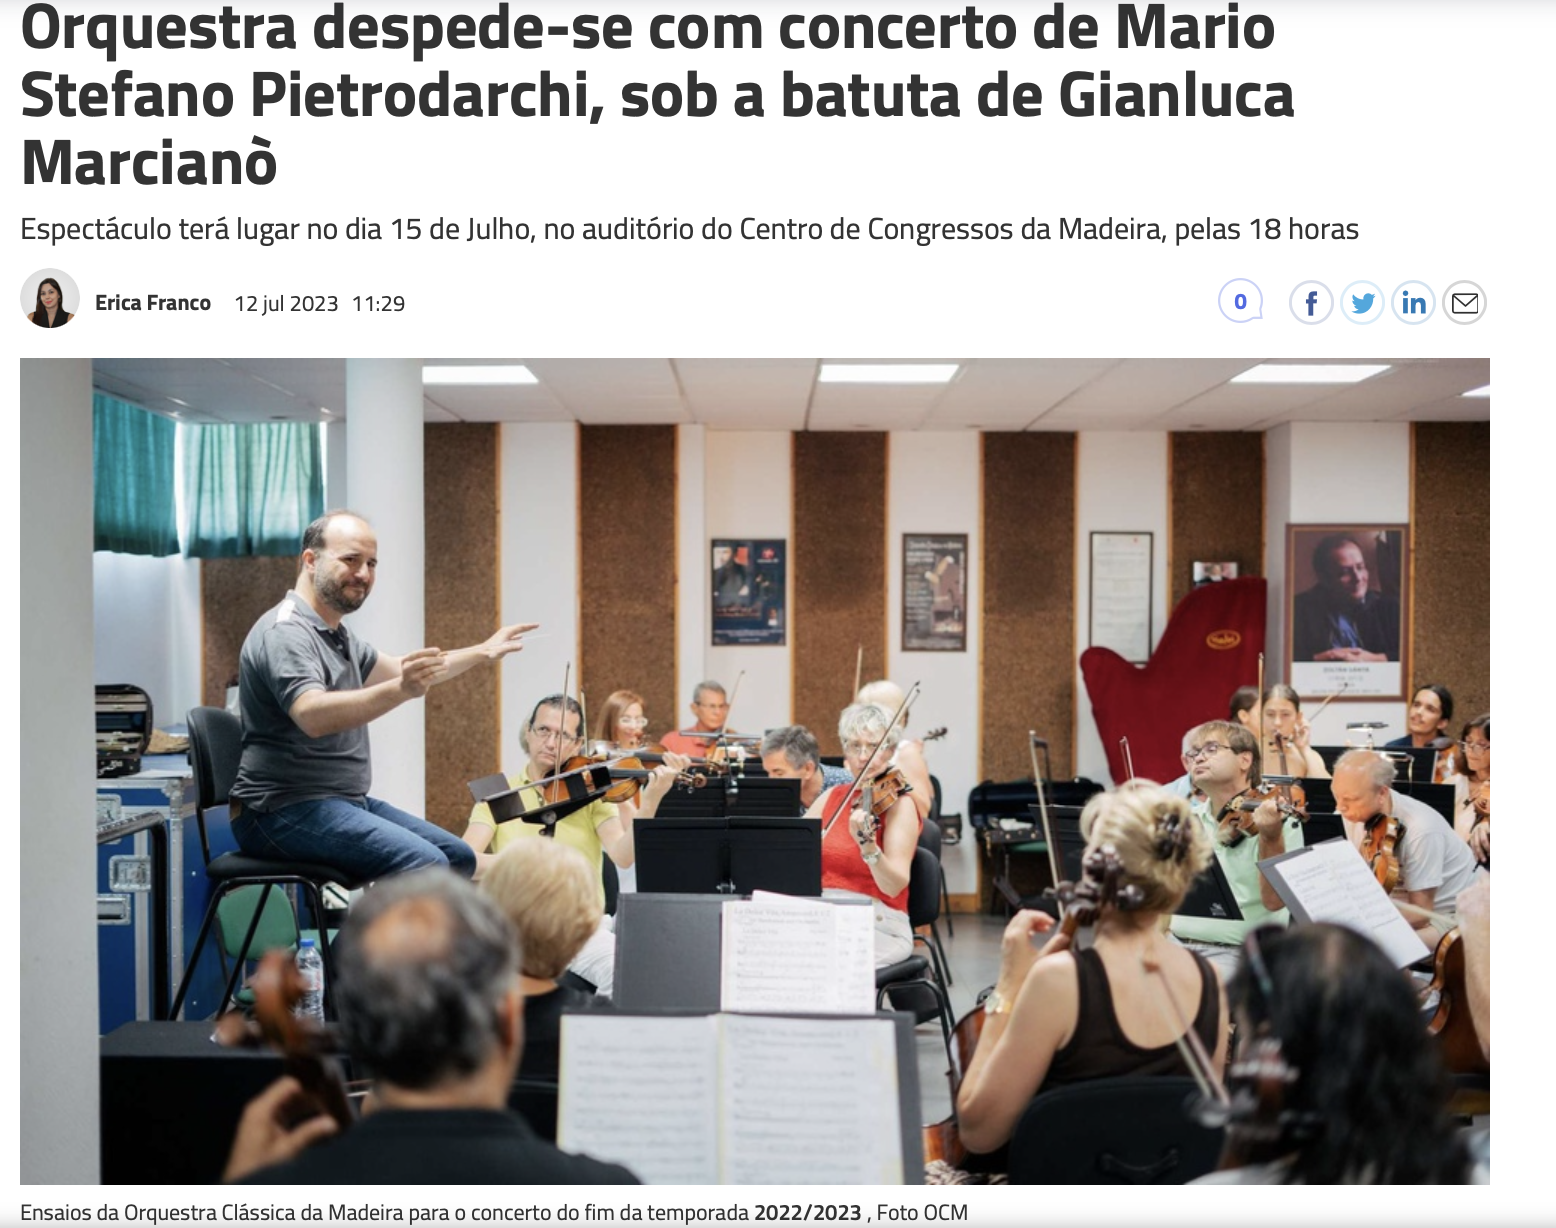 Orquestra despede-se com concerto de Mario Stefano Pietrodarchi, sob a batuta de Gianluca Marcianò